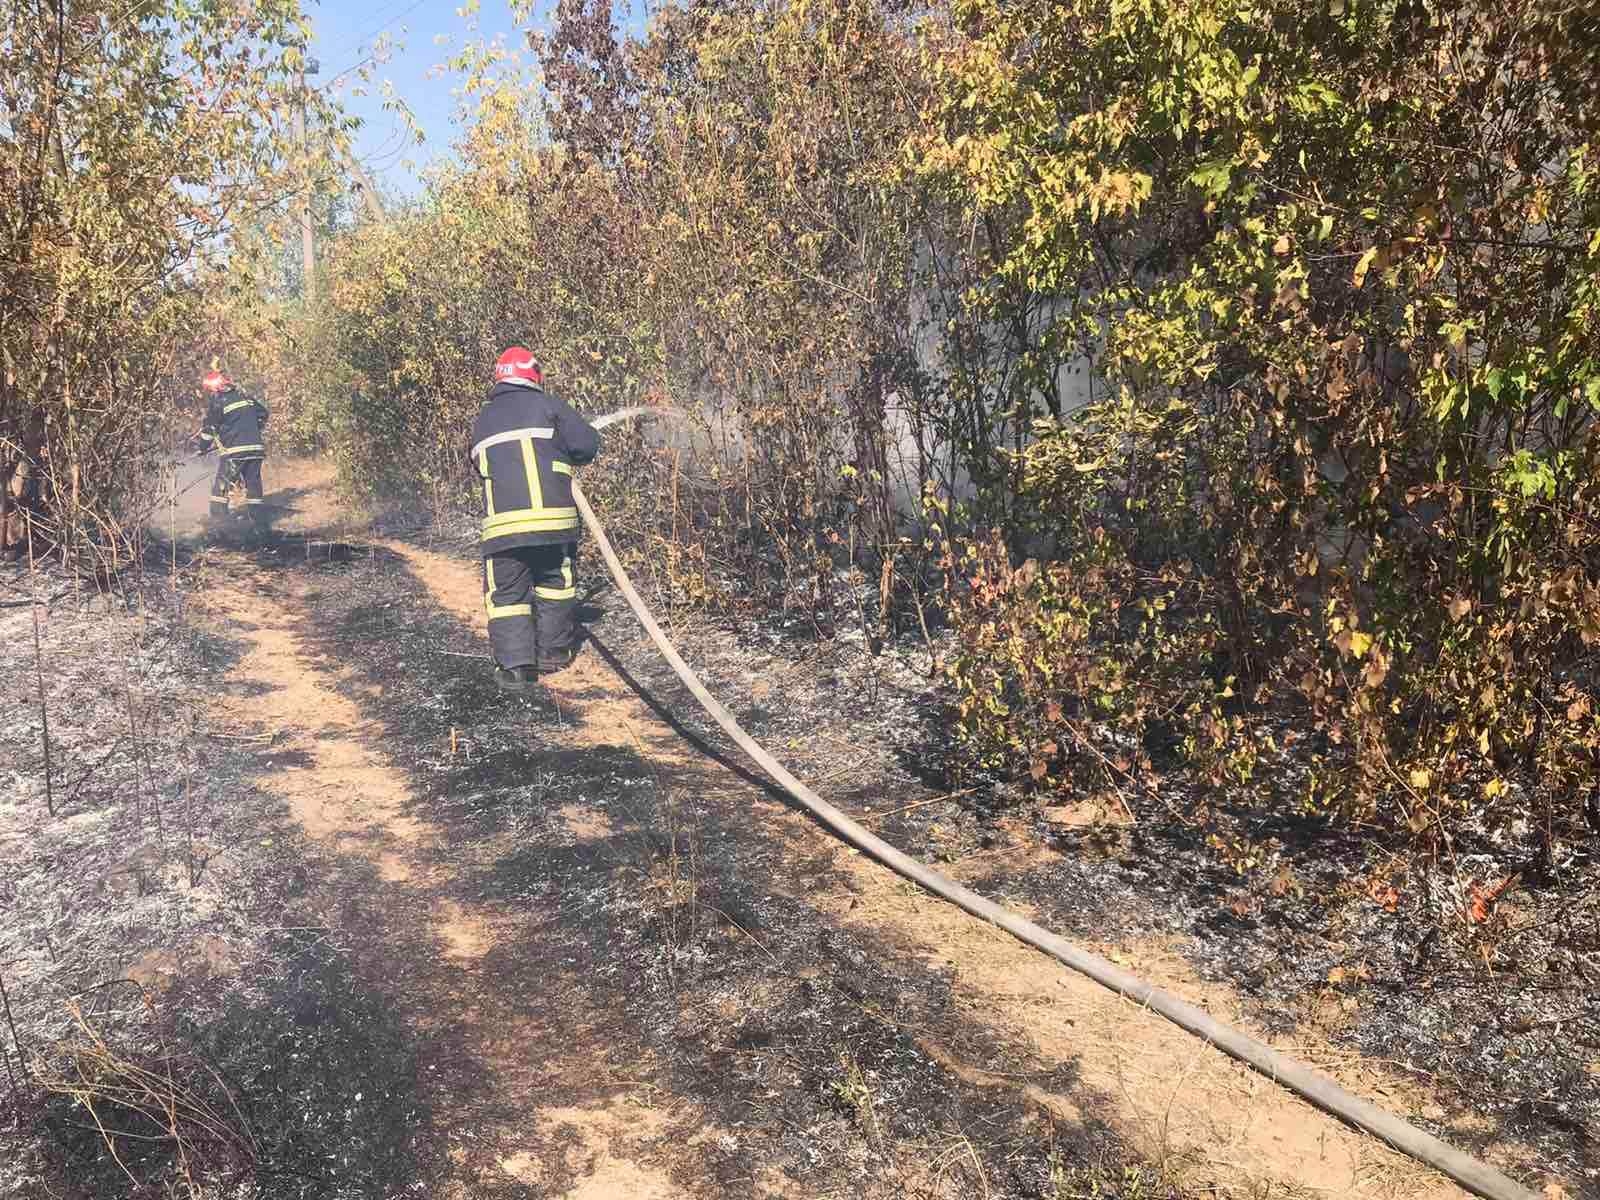 за минулу добу рятувальниками ліквідовано 19 пожеж в екосистемах, а за добу 23 вересня вигоріло взагалі 22 гектари сухостою